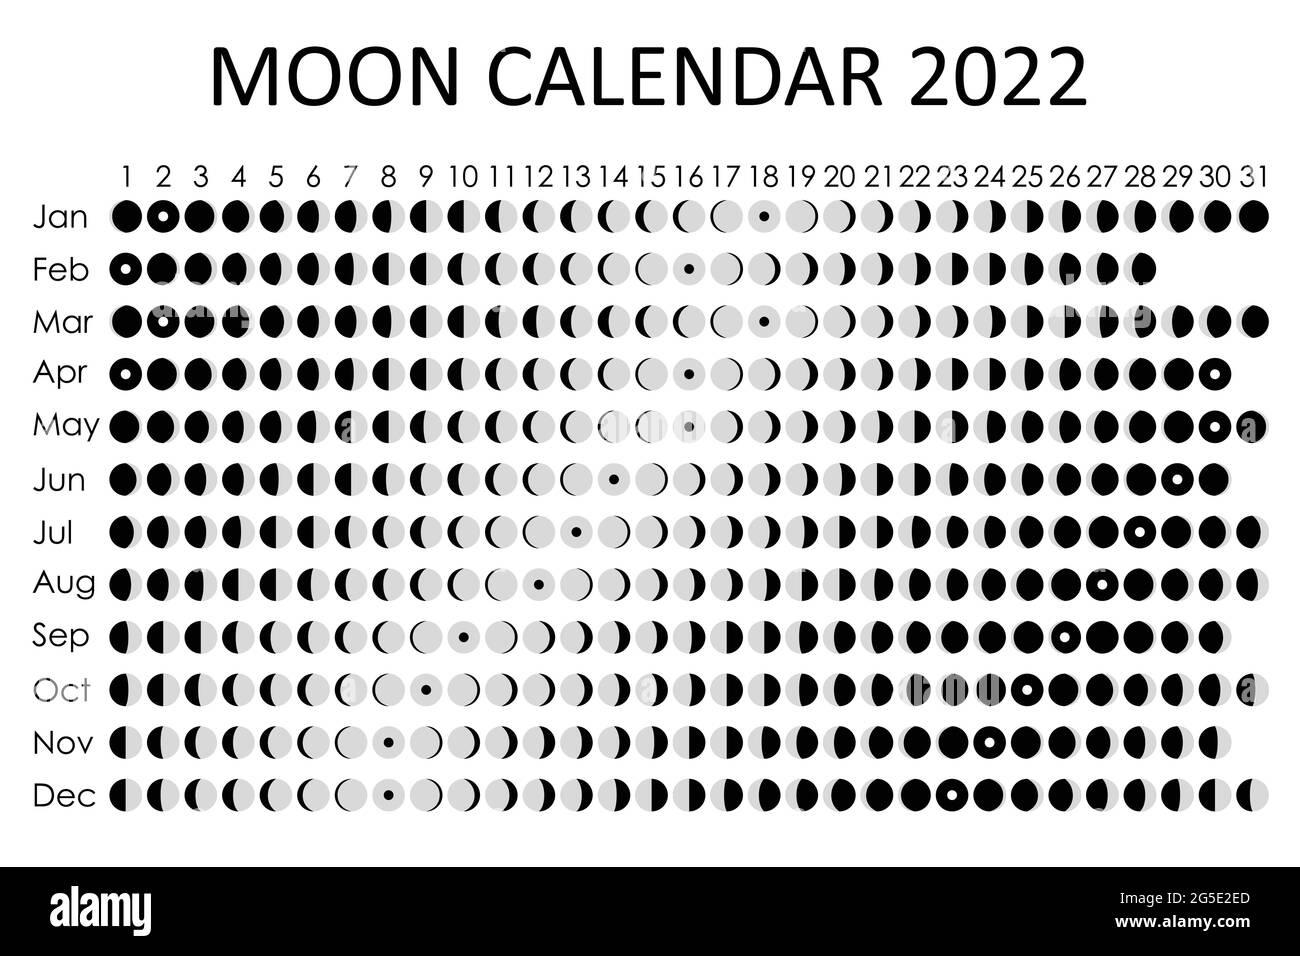 Pick Moon Calendar December 2022